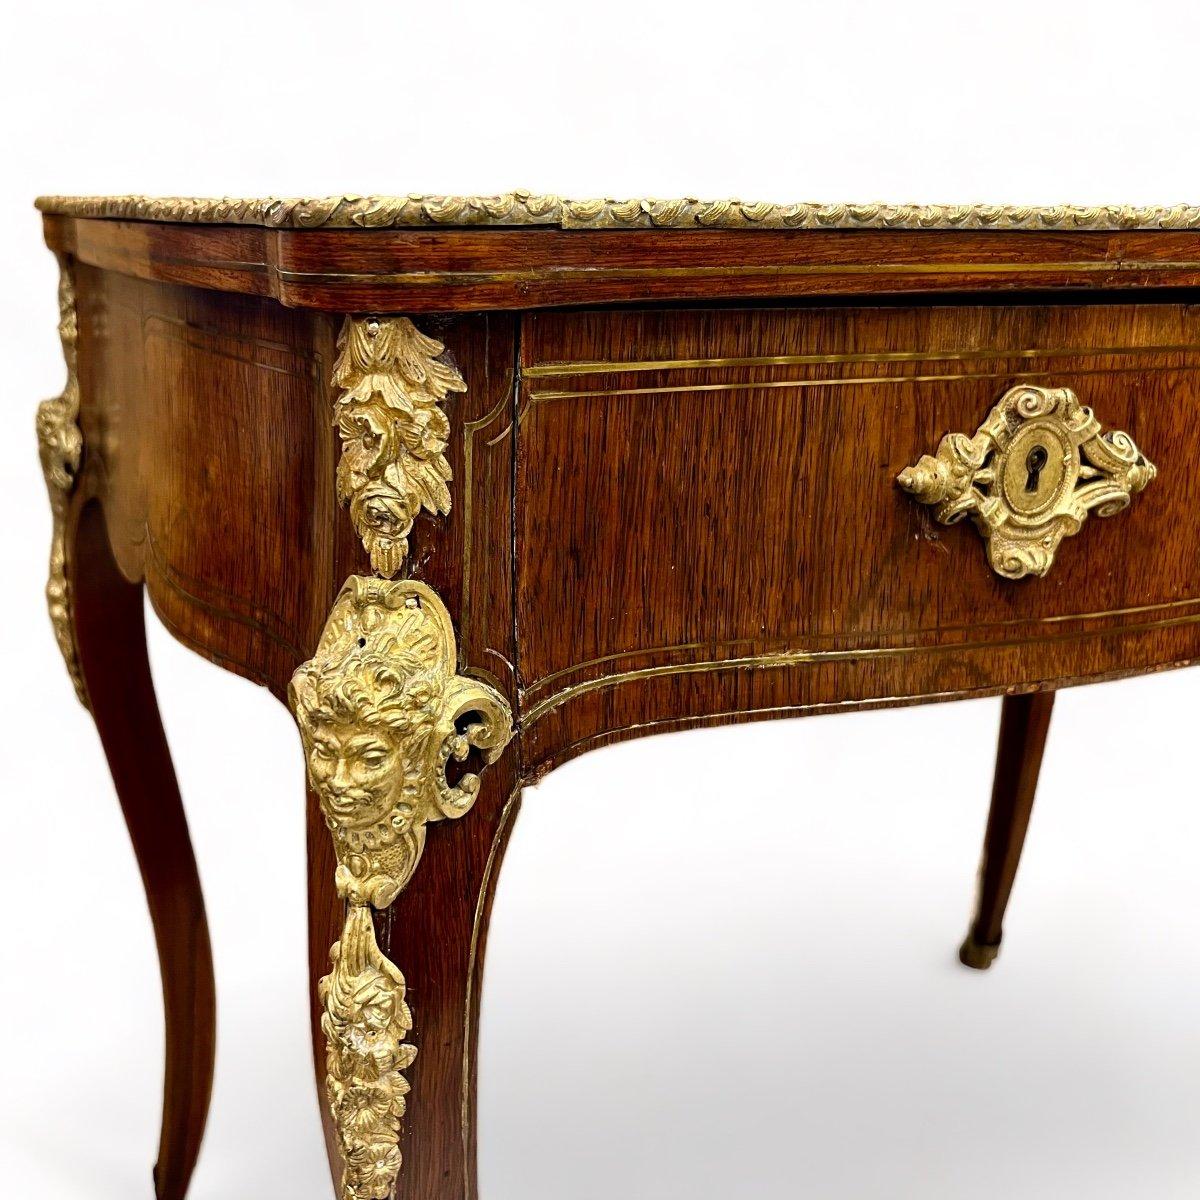 Dieser kleine Schreibtisch aus dem 19. Jahrhundert ist aus Palisanderholz mit eingefügten Messingkehlen gefertigt. Er weist eine Mischung aus Elementen auf, die sowohl für den Louis XV- als auch für den Louis XVI-Stil repräsentativ sind, was